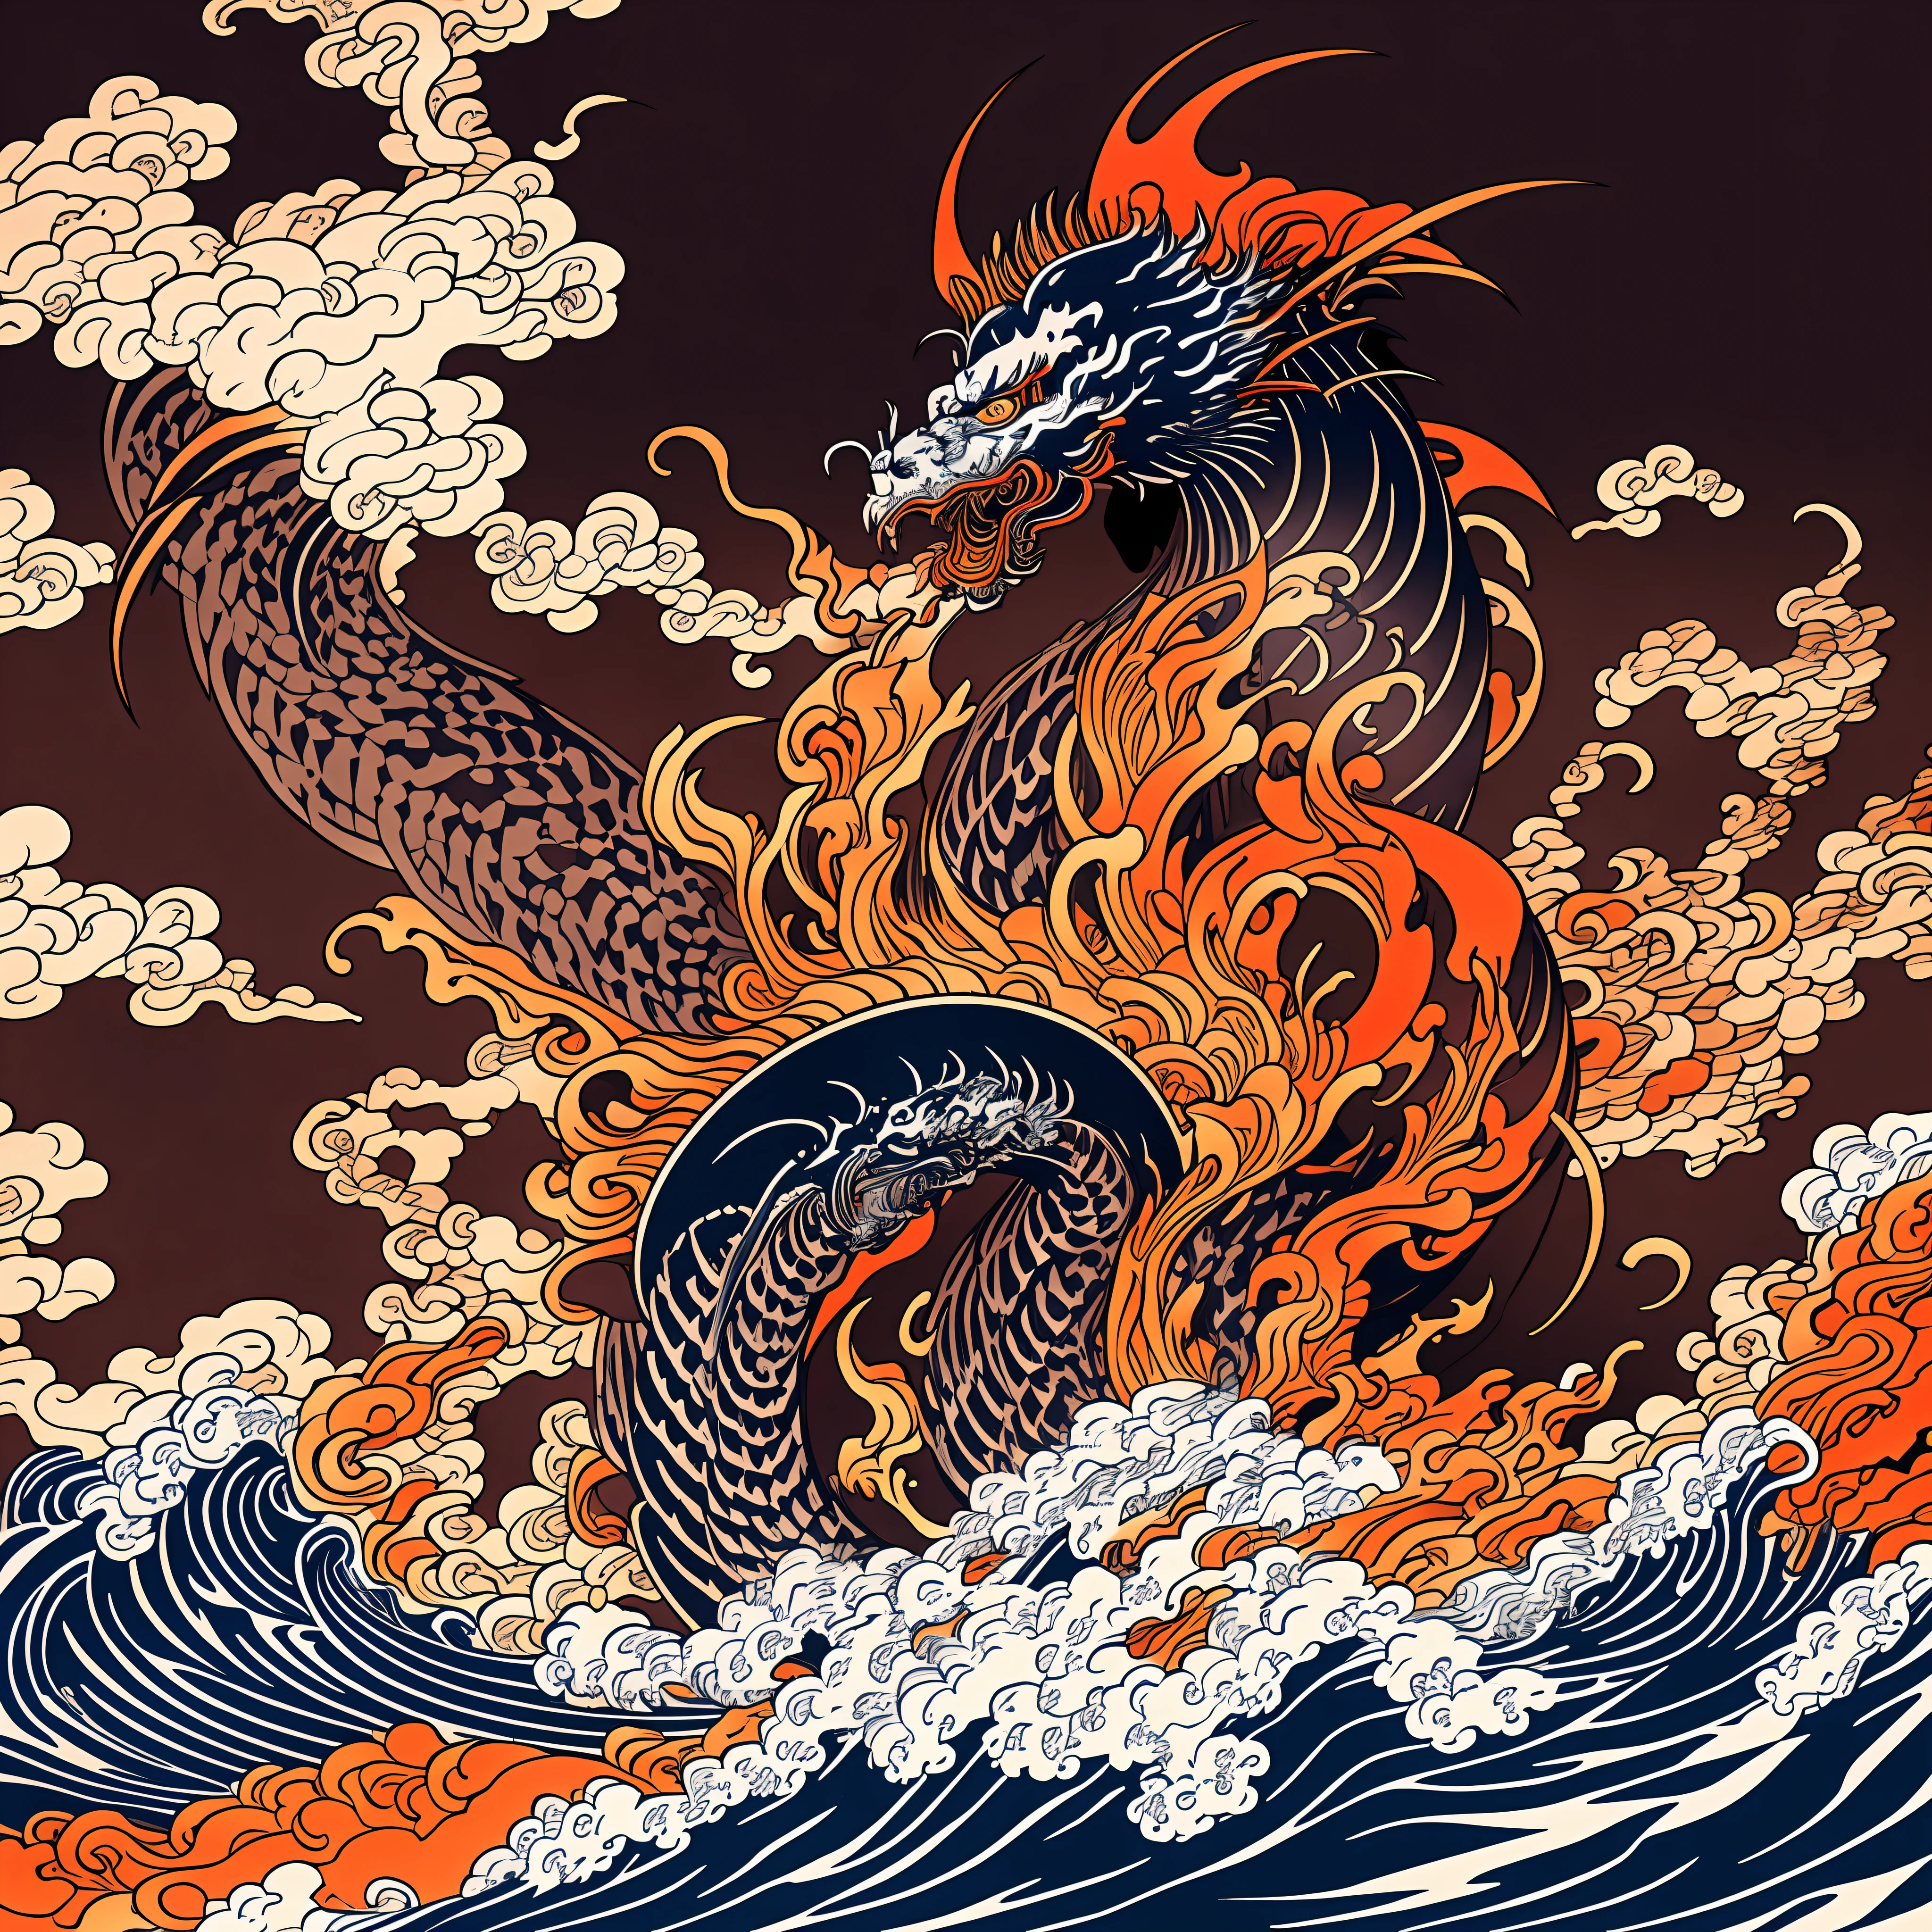 Katsushika Hokusai style dessin au trait, Rouge foncé façon Hokusai, conception de modèle de flamme vermillon. Dragon en forme de flamme géante, Dans la meilleure qualité, masterpiece high resolution Style Ukiyo-e. Style artistique, 1:1, Style Ukiyo-e, art vectoriel 3D, Adobe Illustrator, Résolution 4k, Arrière-plans magnifiques seulement